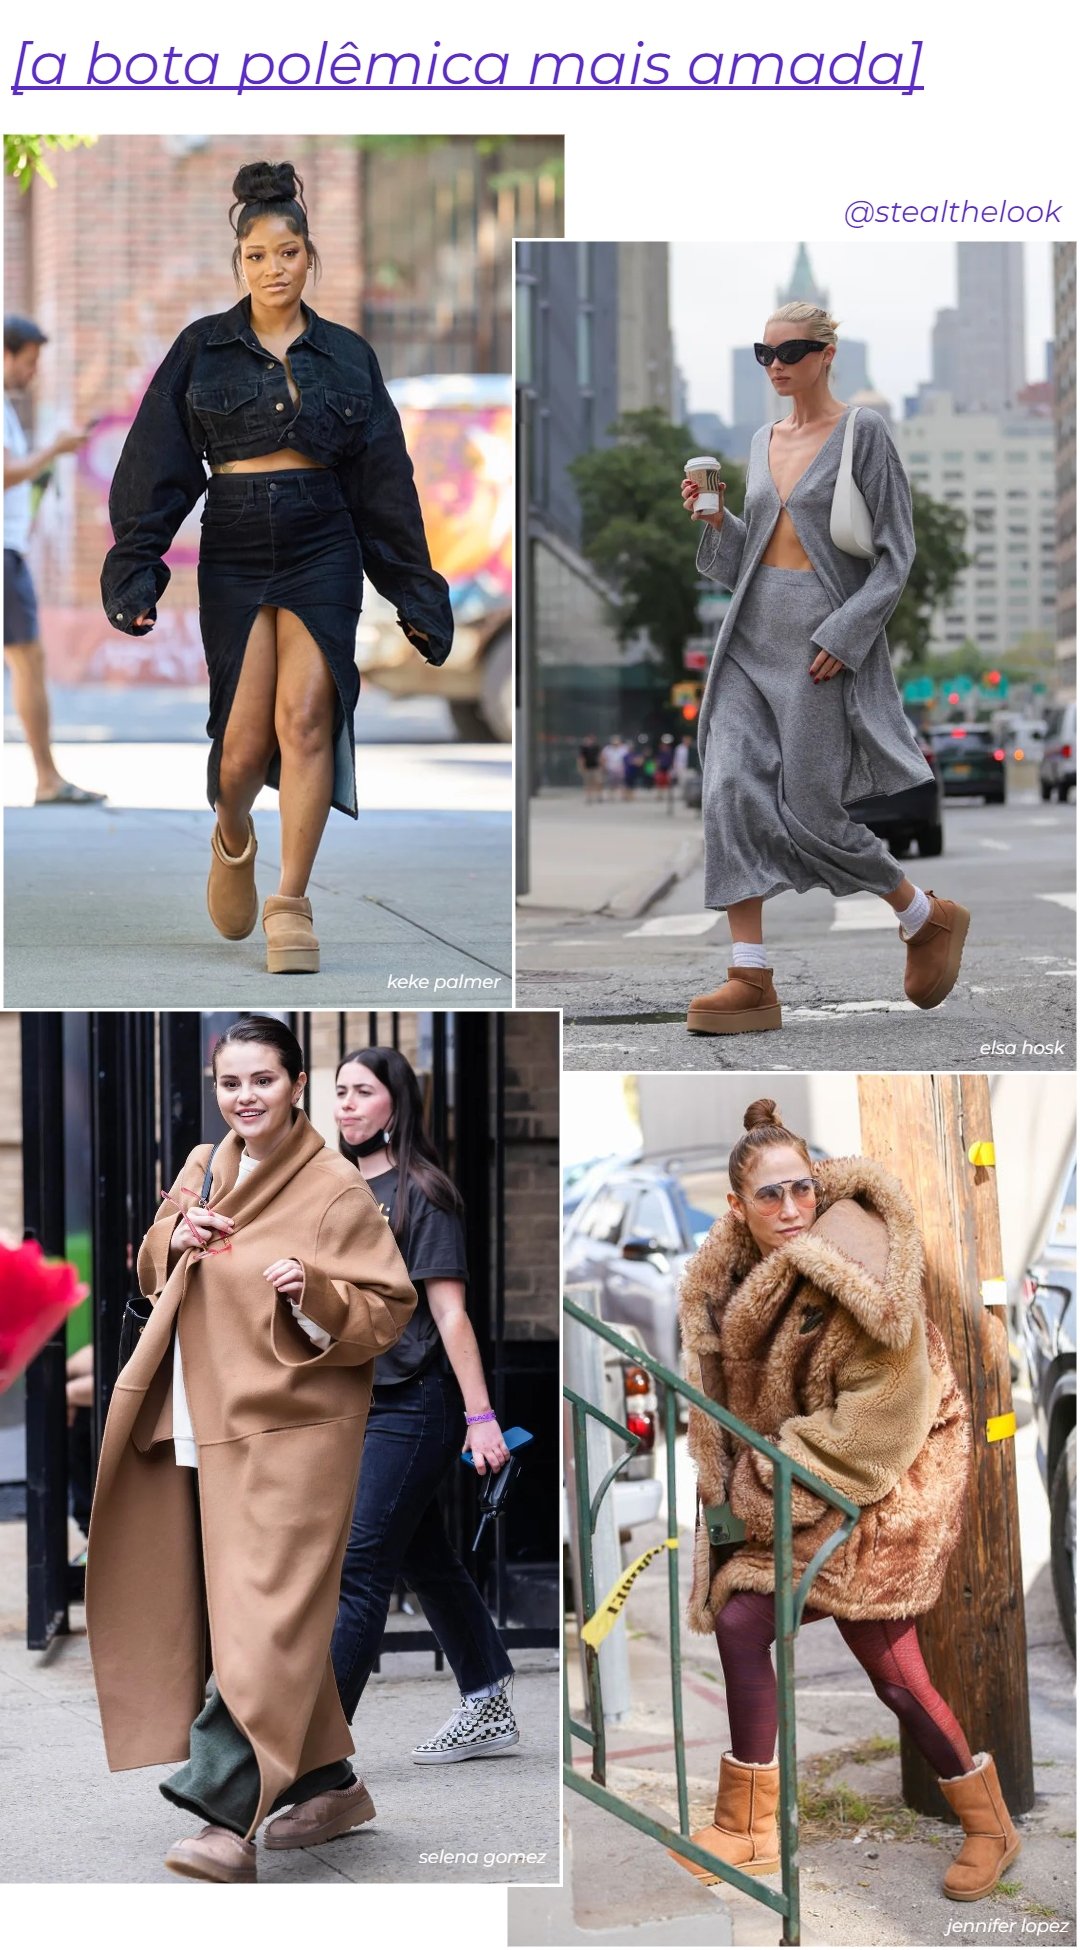 Celebridades - roupas diversas - tendências polêmicas - inverno - colagem de imagens - https://stealthelook.com.br